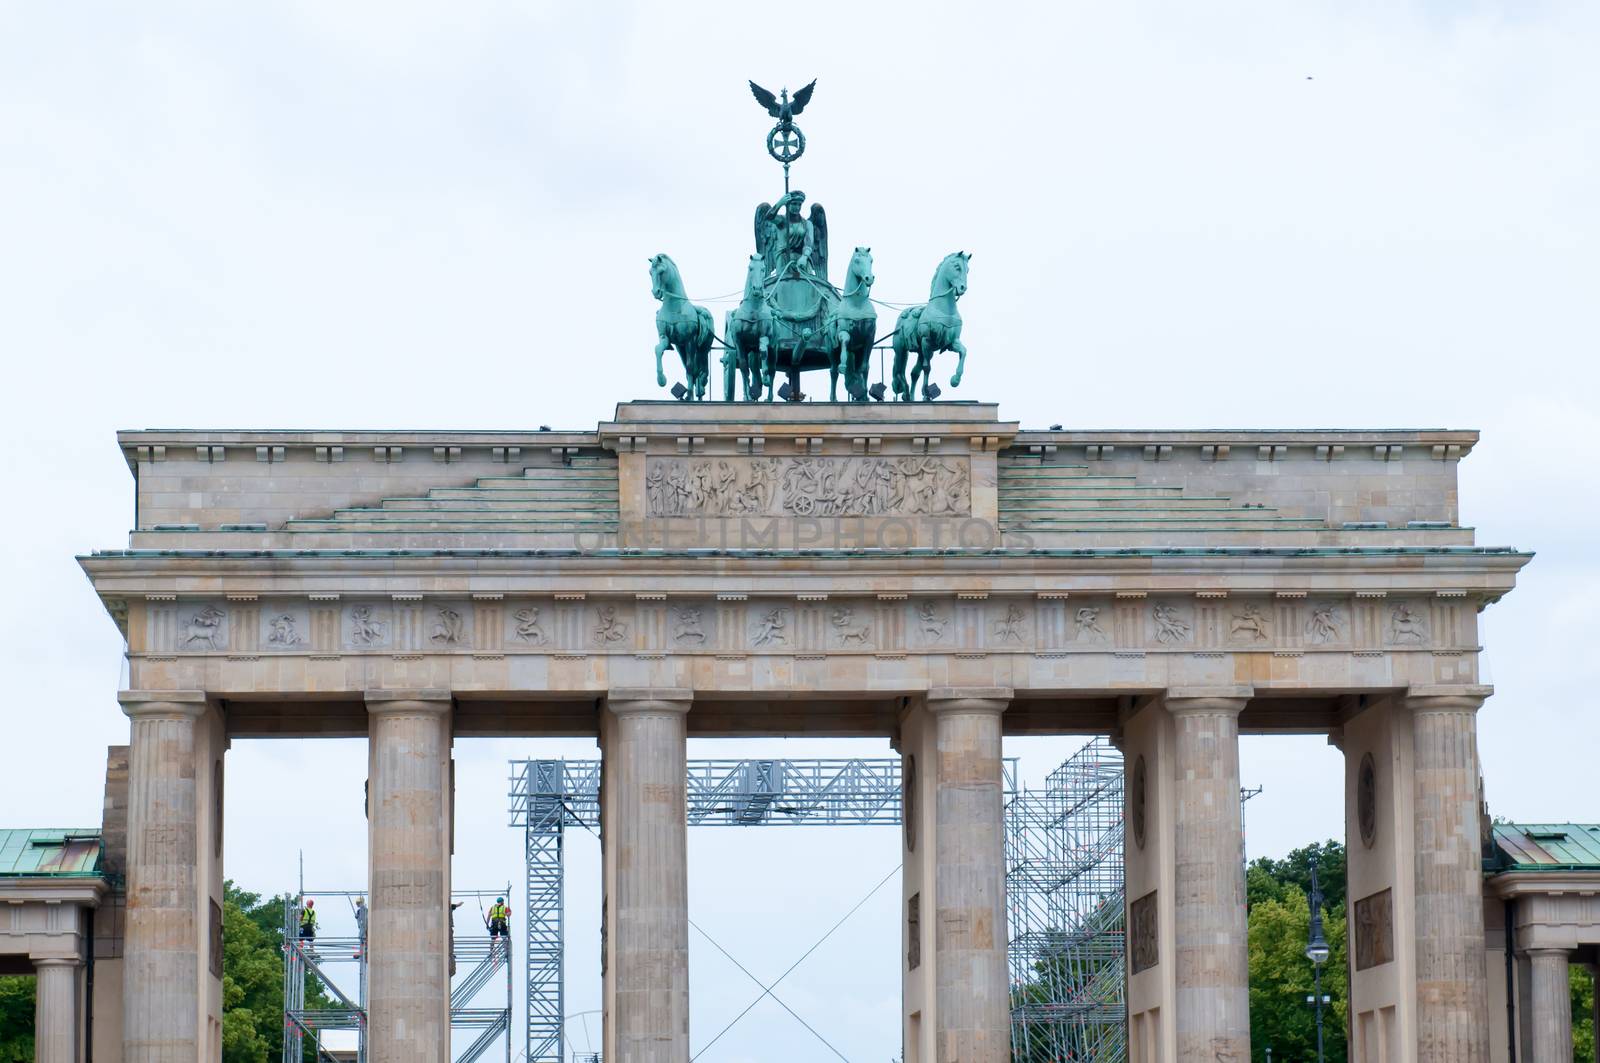 Brandenburg Gate by rook